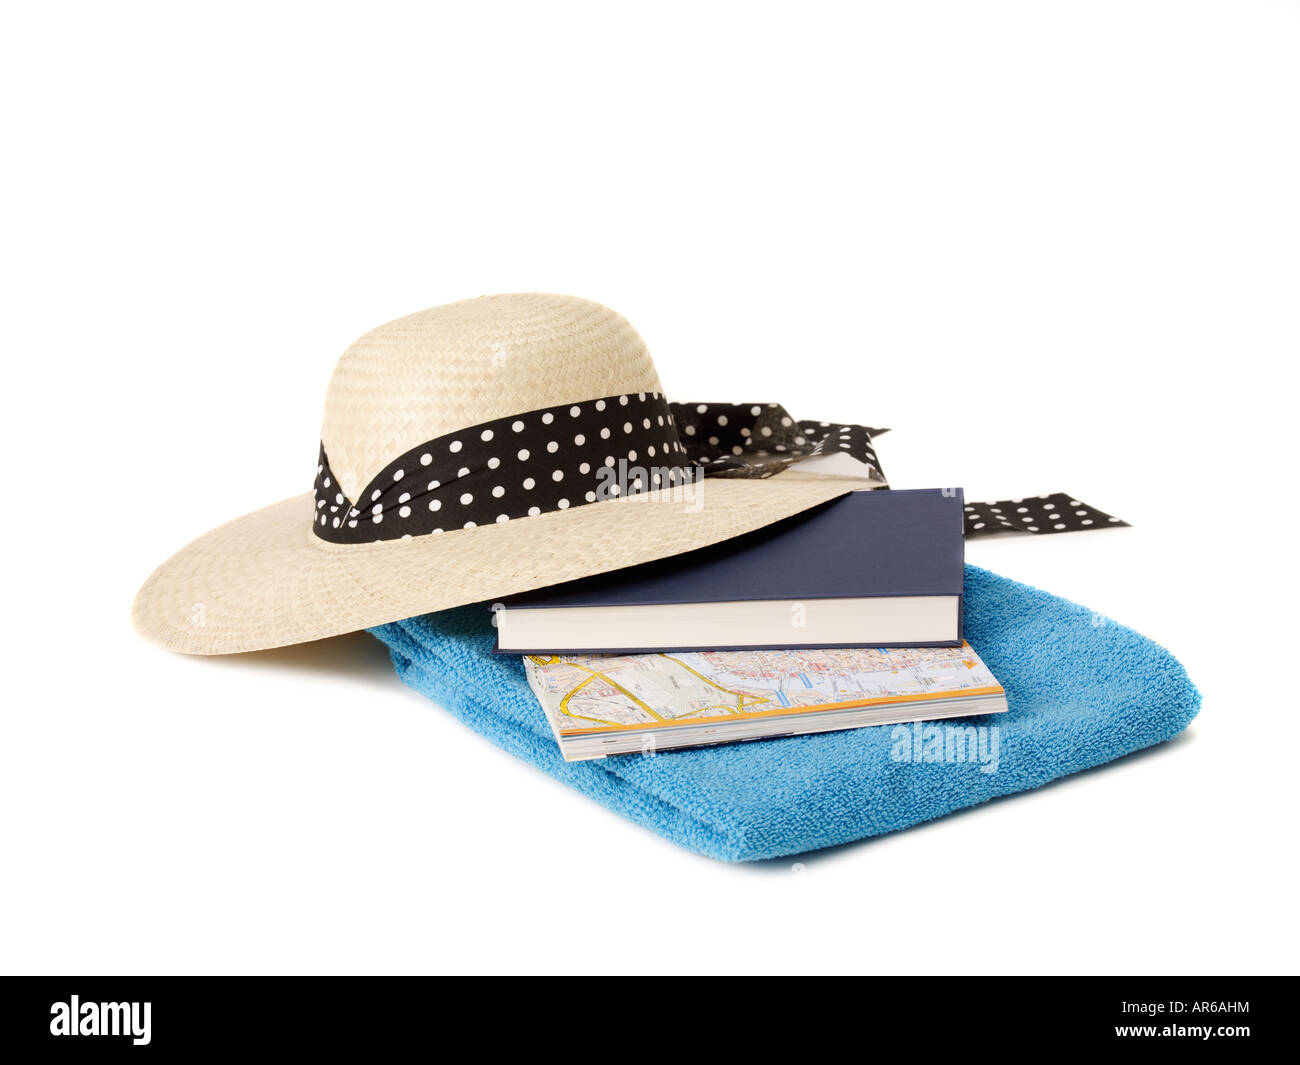 Serviette de plage Sun hat book et carte Banque D'Images